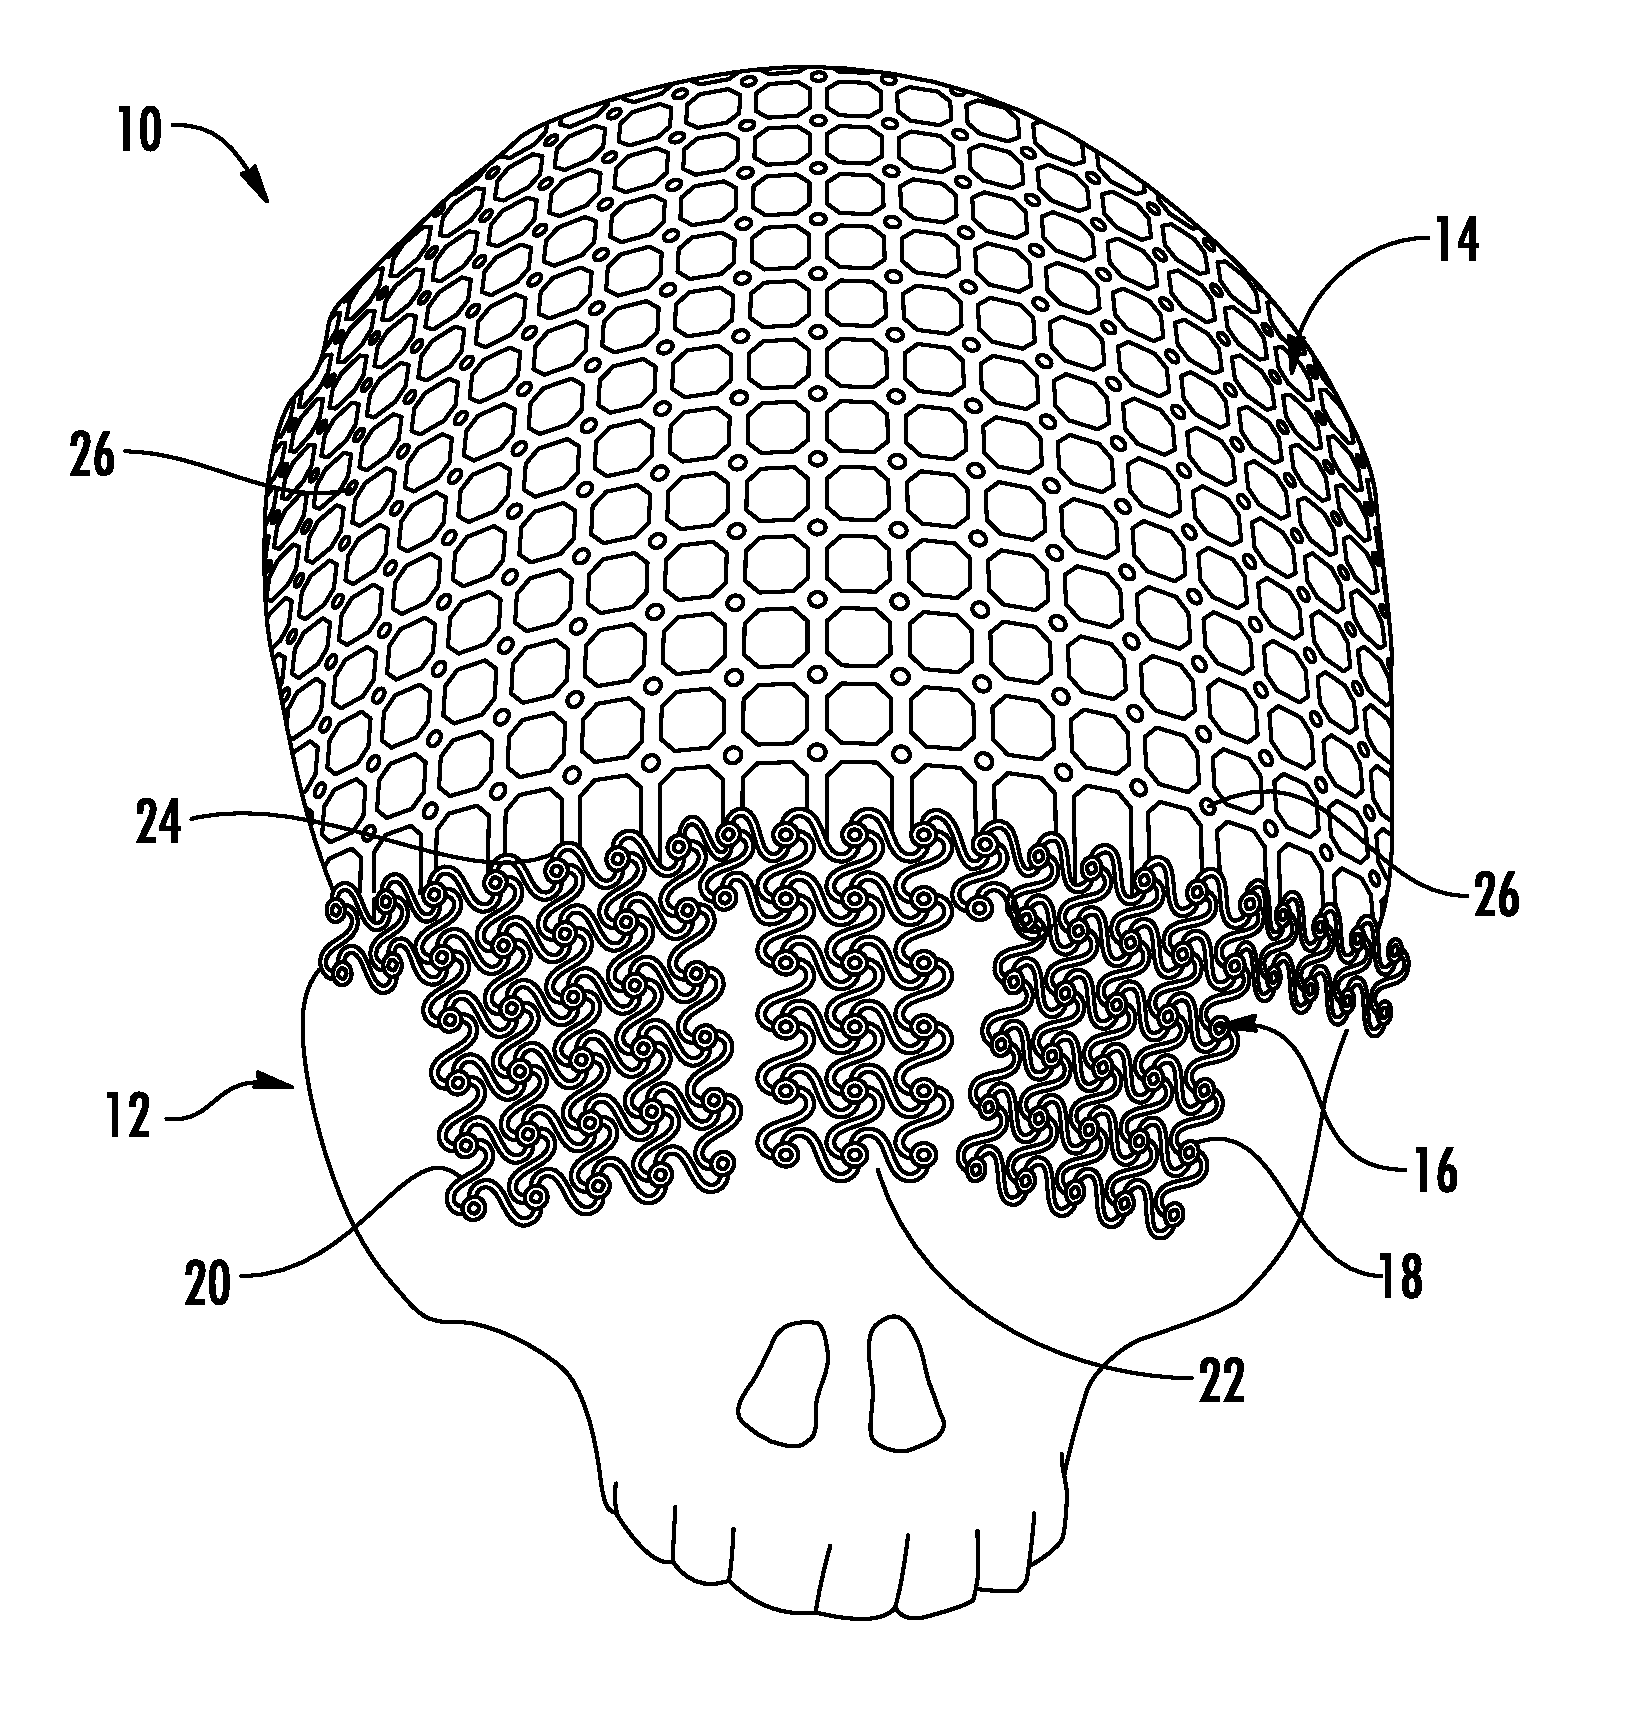 Universal Cranioplasty Mesh